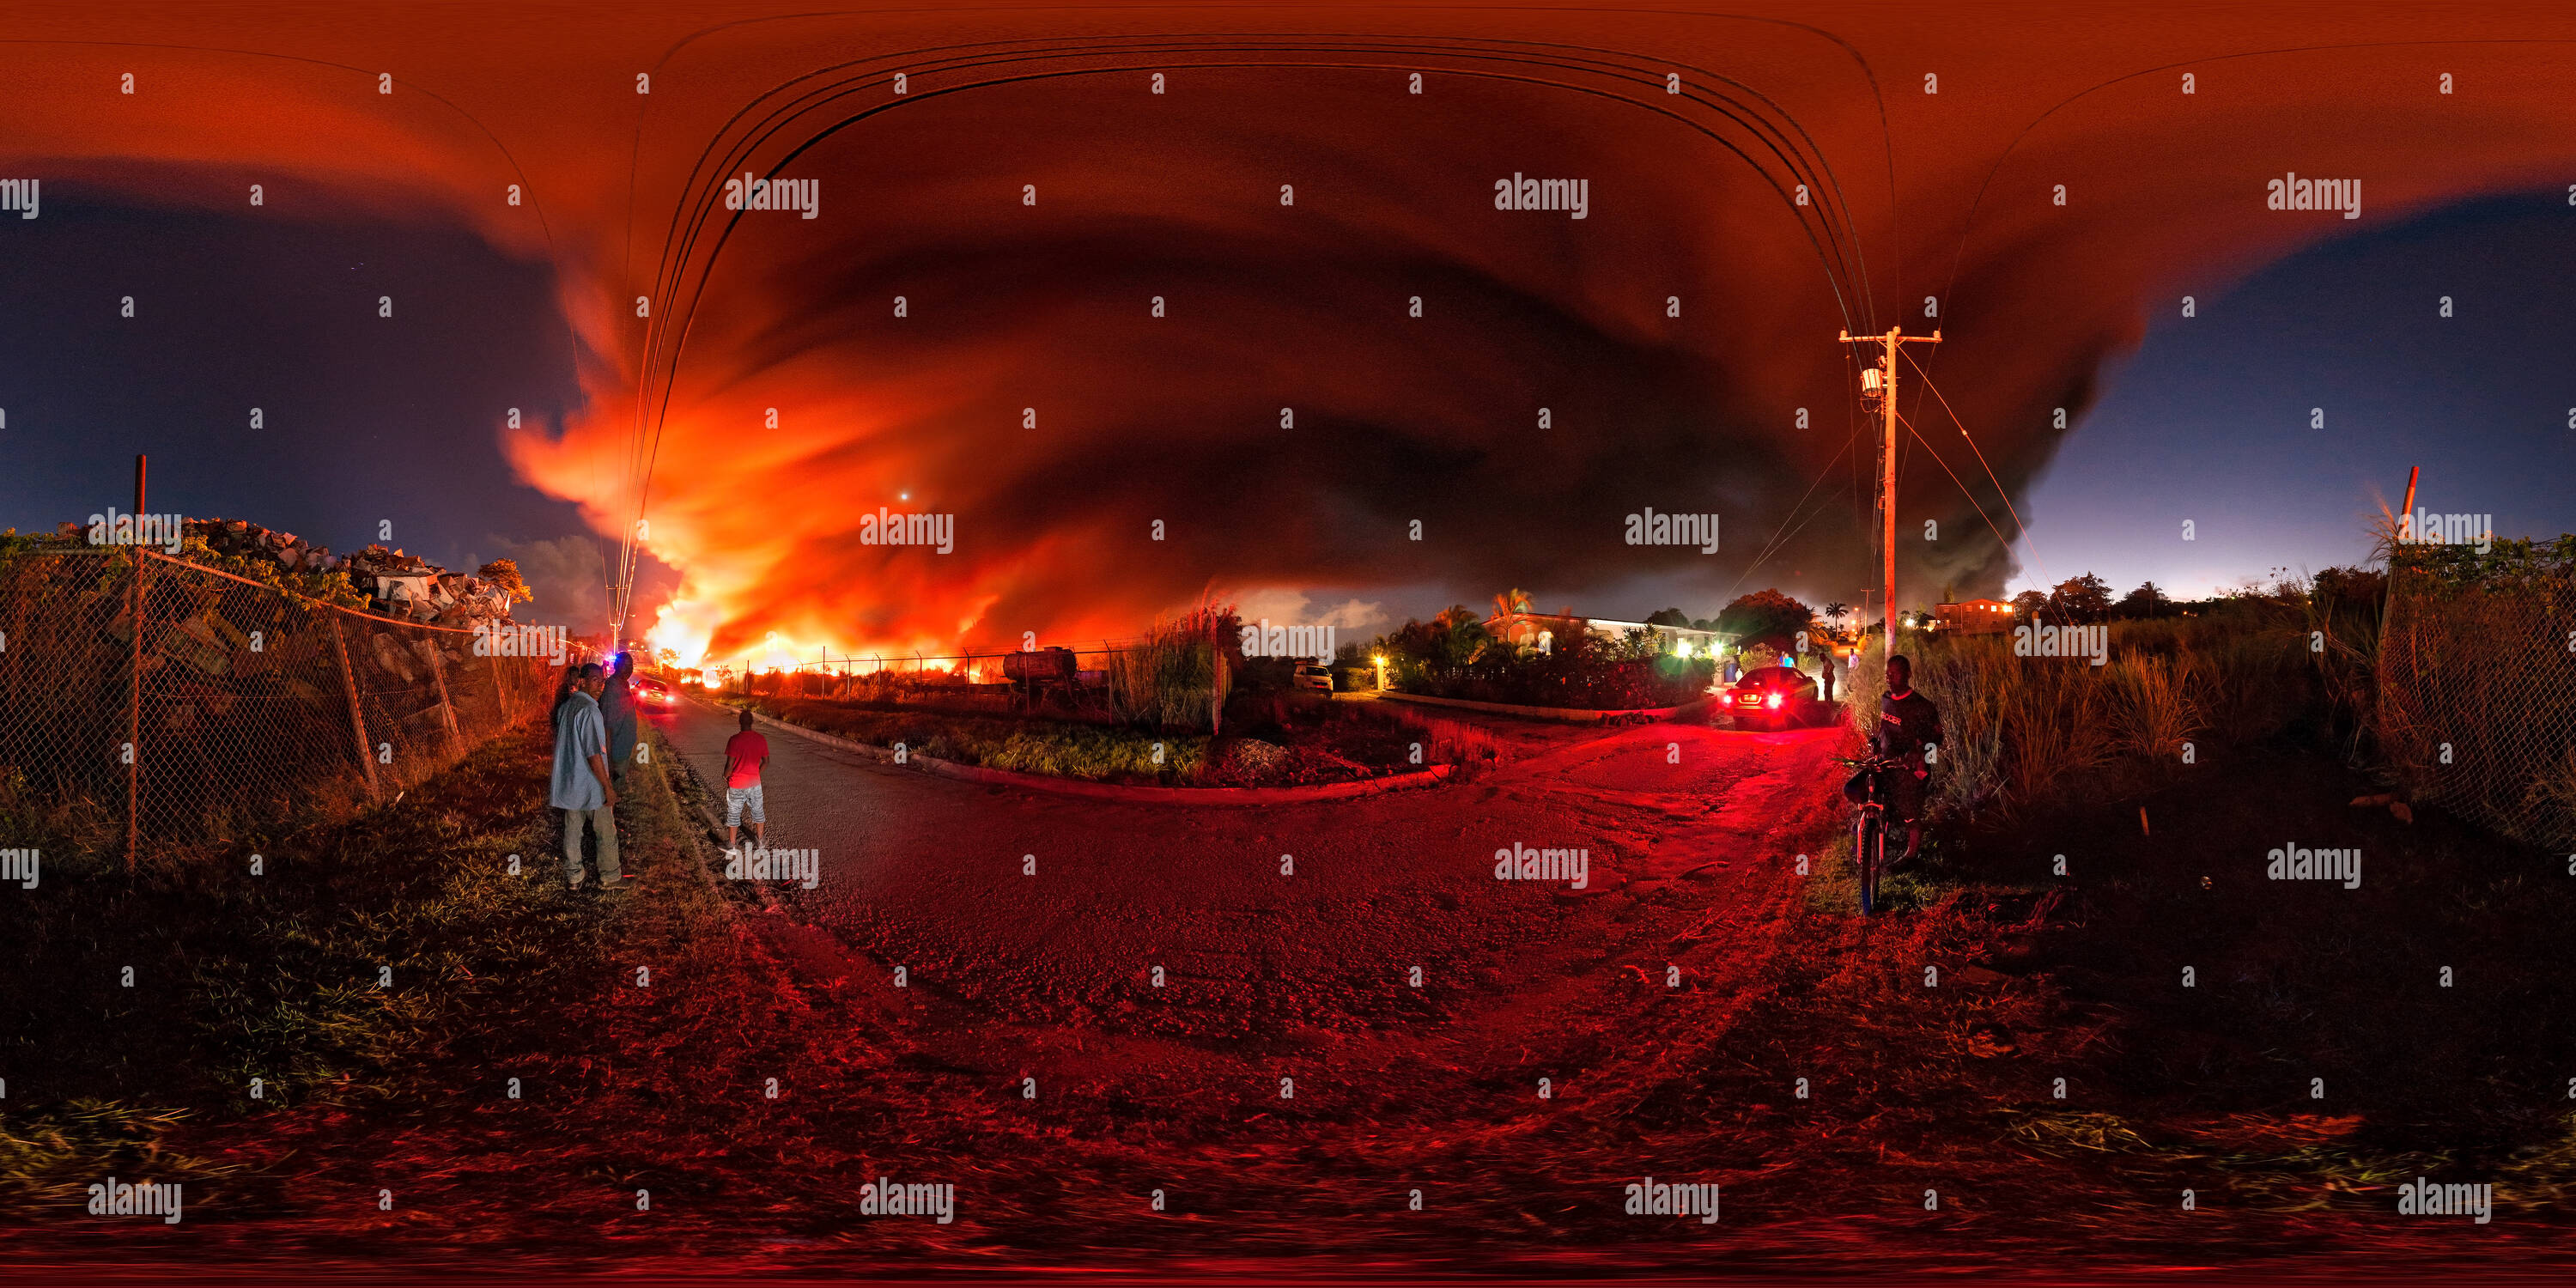 Visualizzazione panoramica a 360 gradi di Dump sul fuoco!